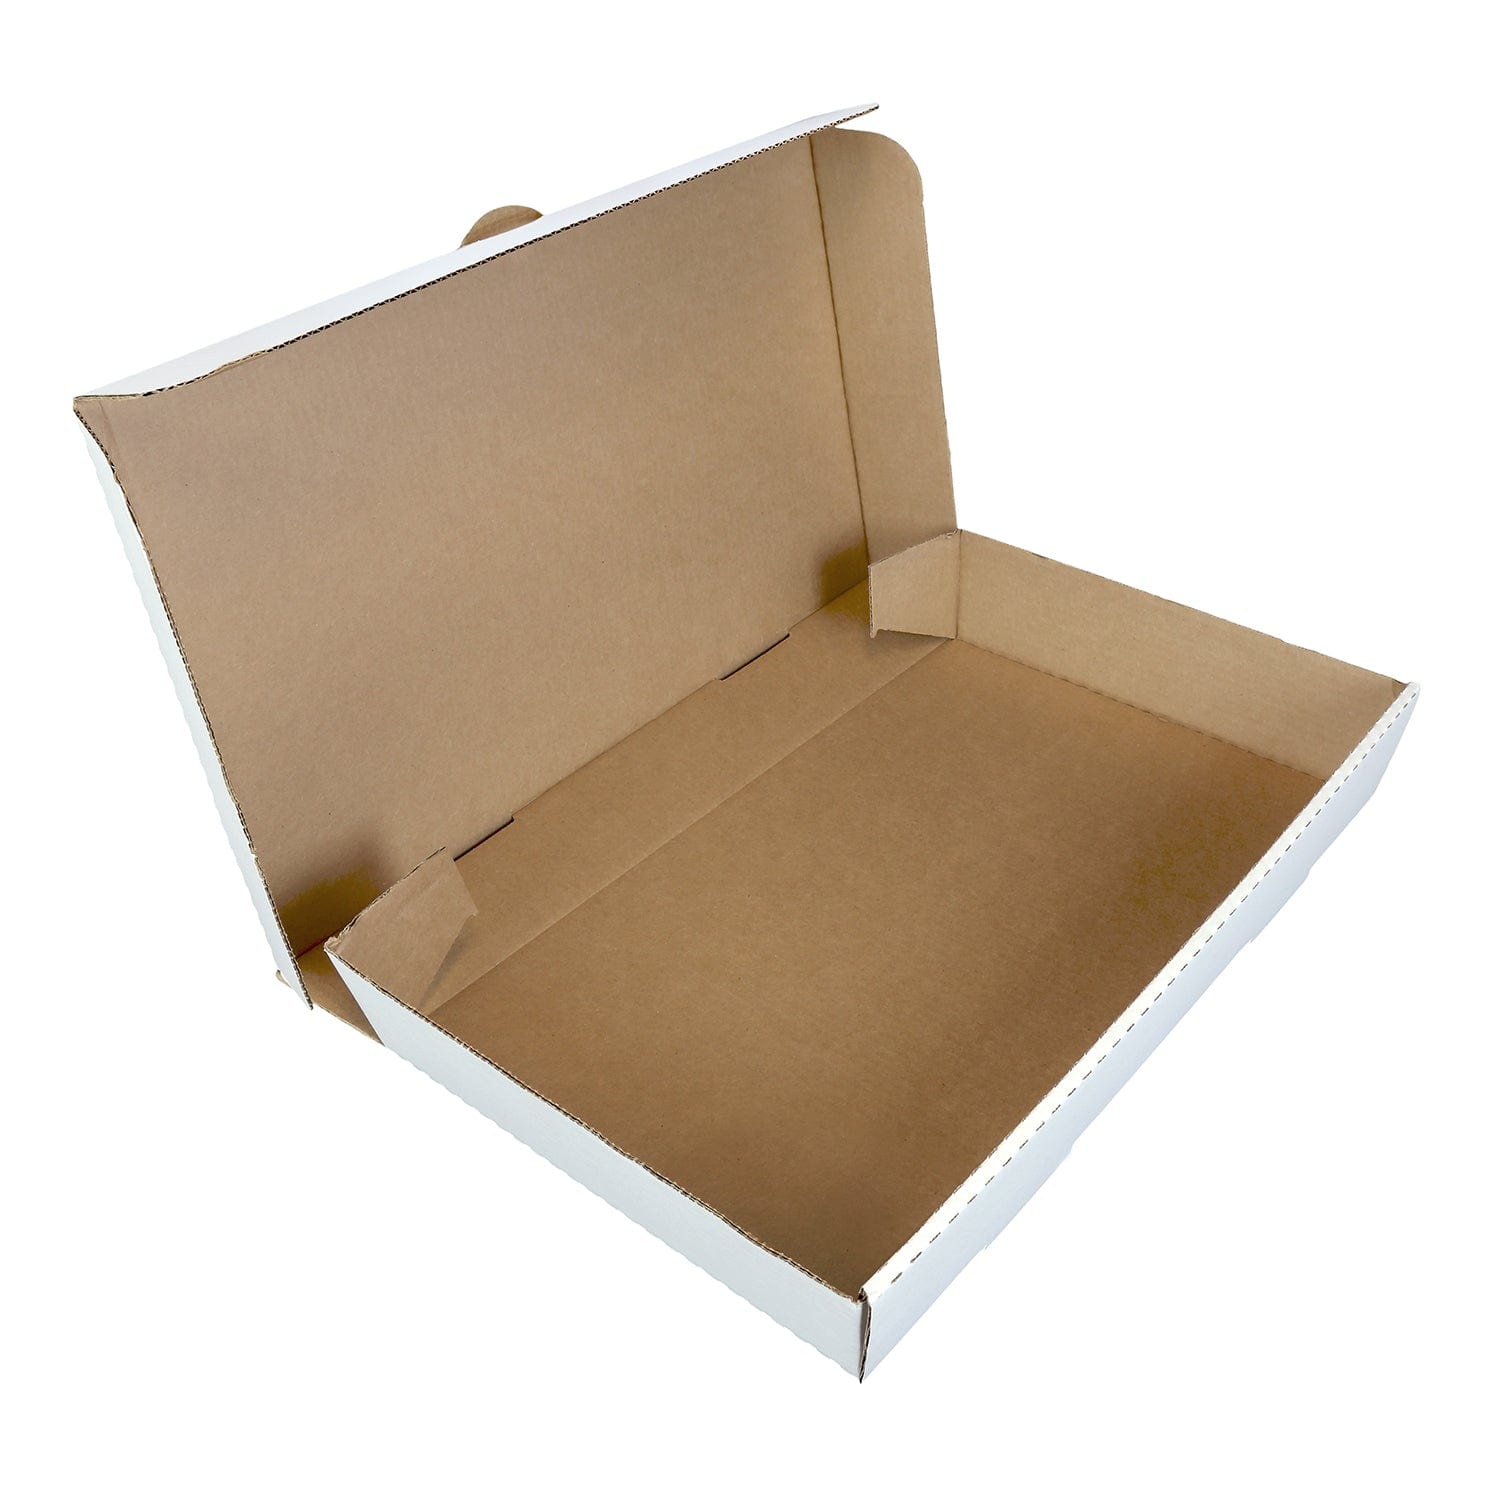 3) Party Size (13 oz.) Bag Box